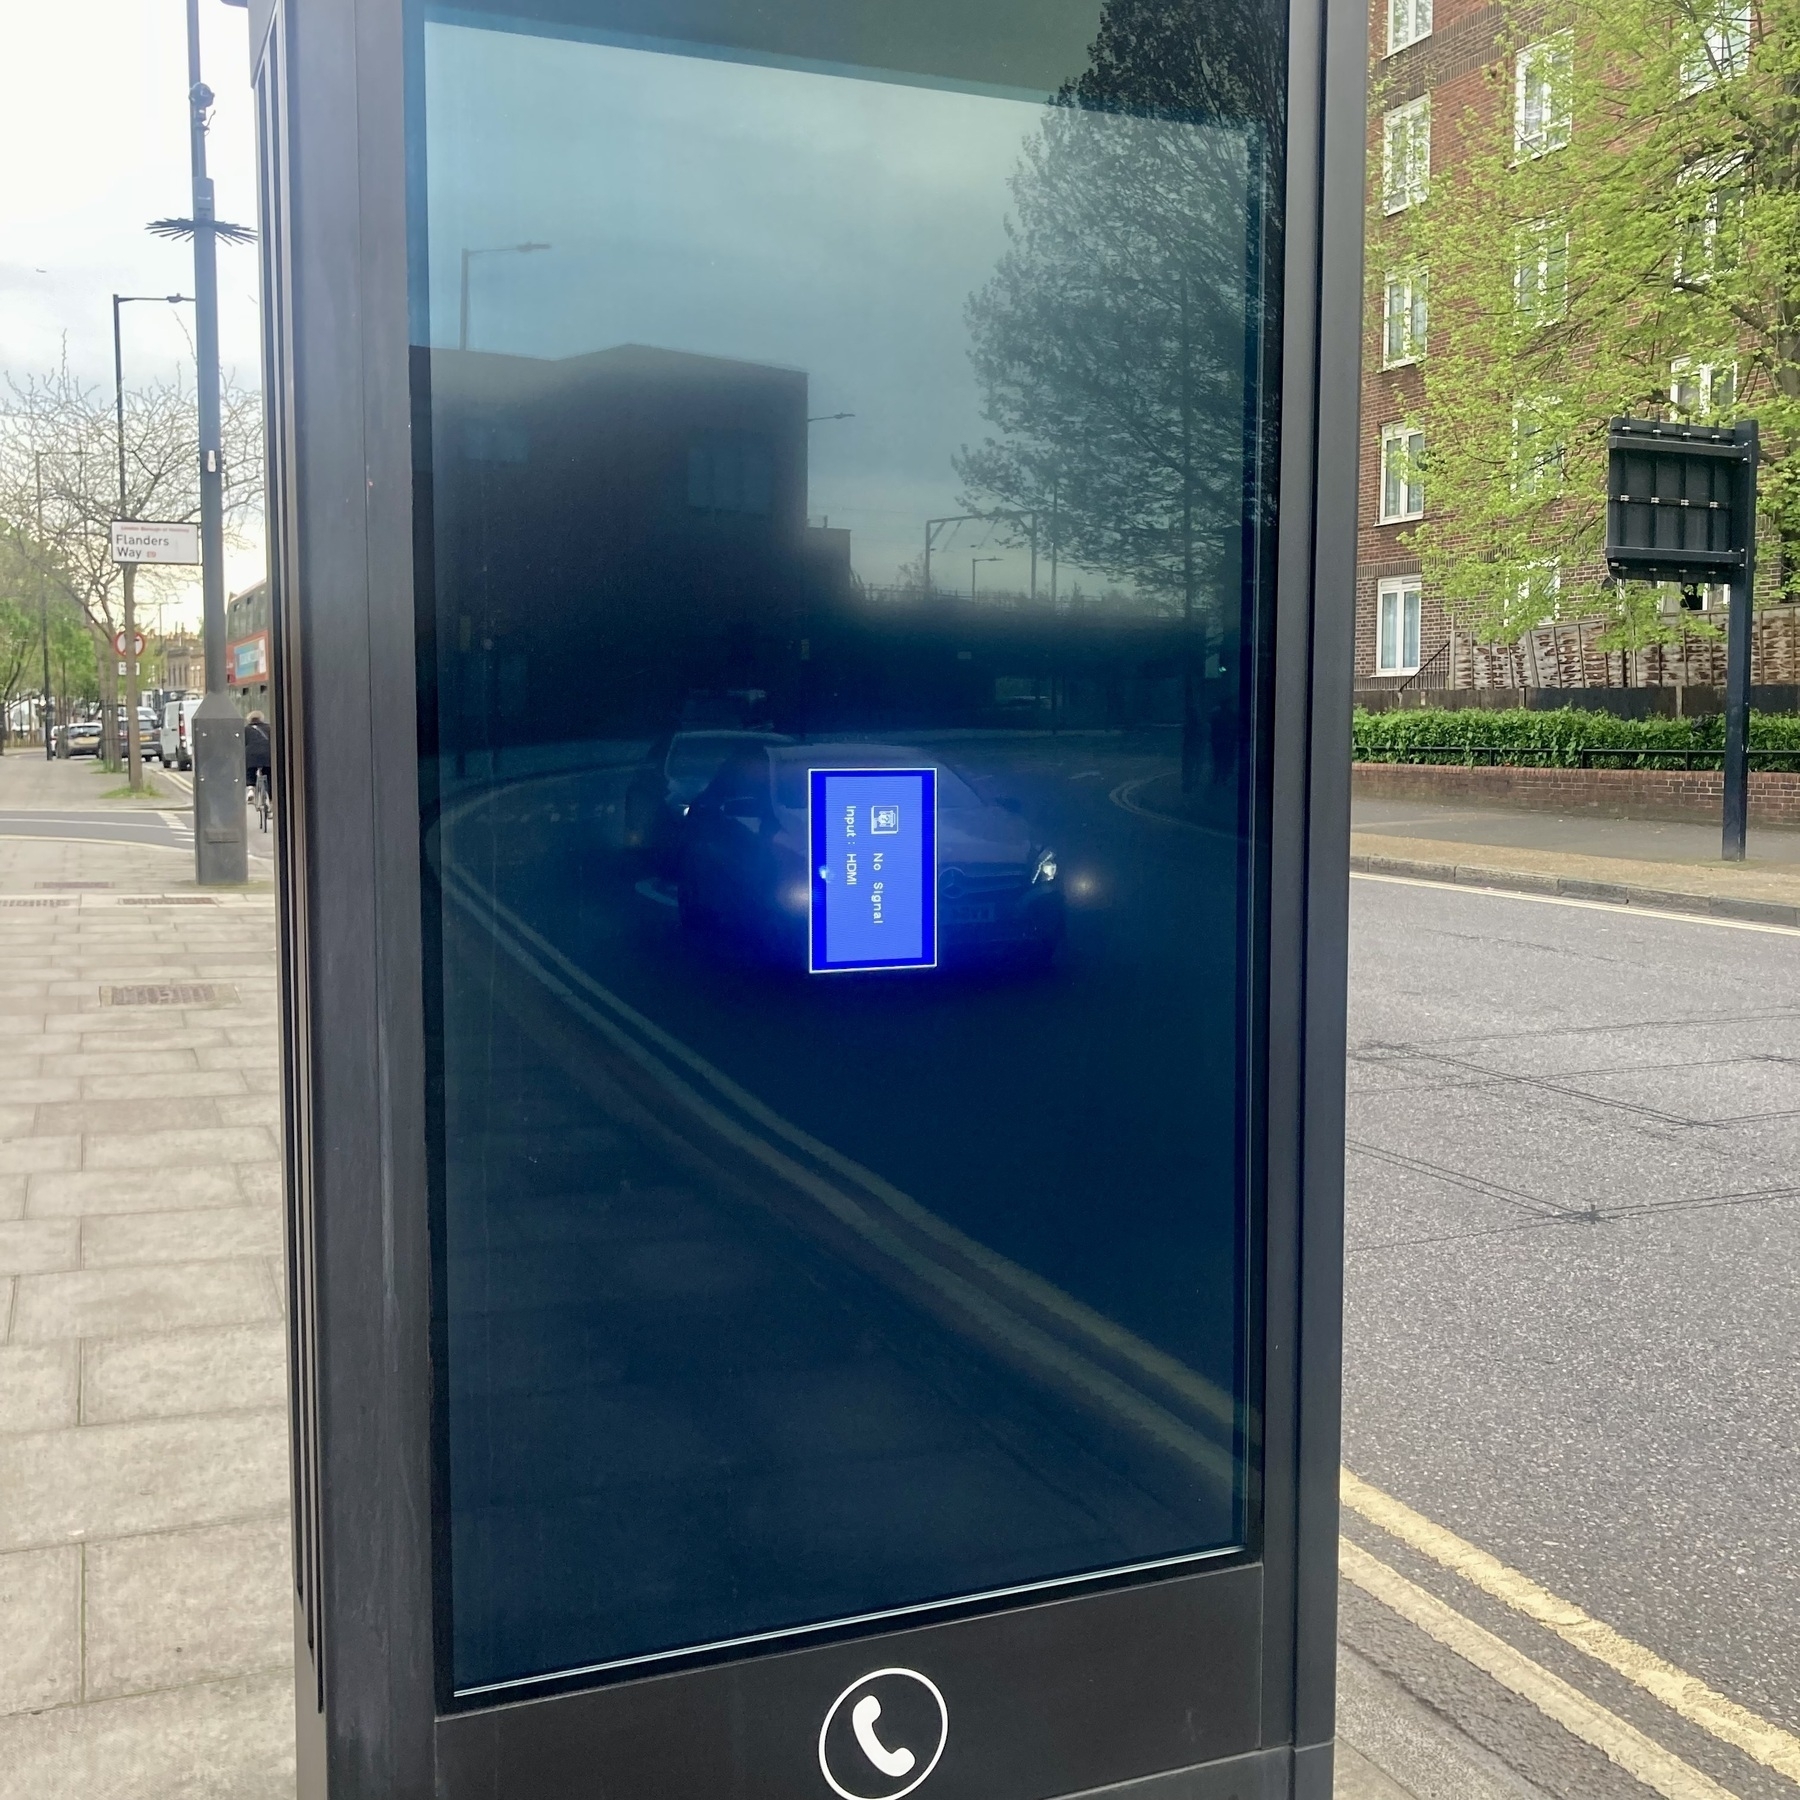 A digital advertising screen shows an input error